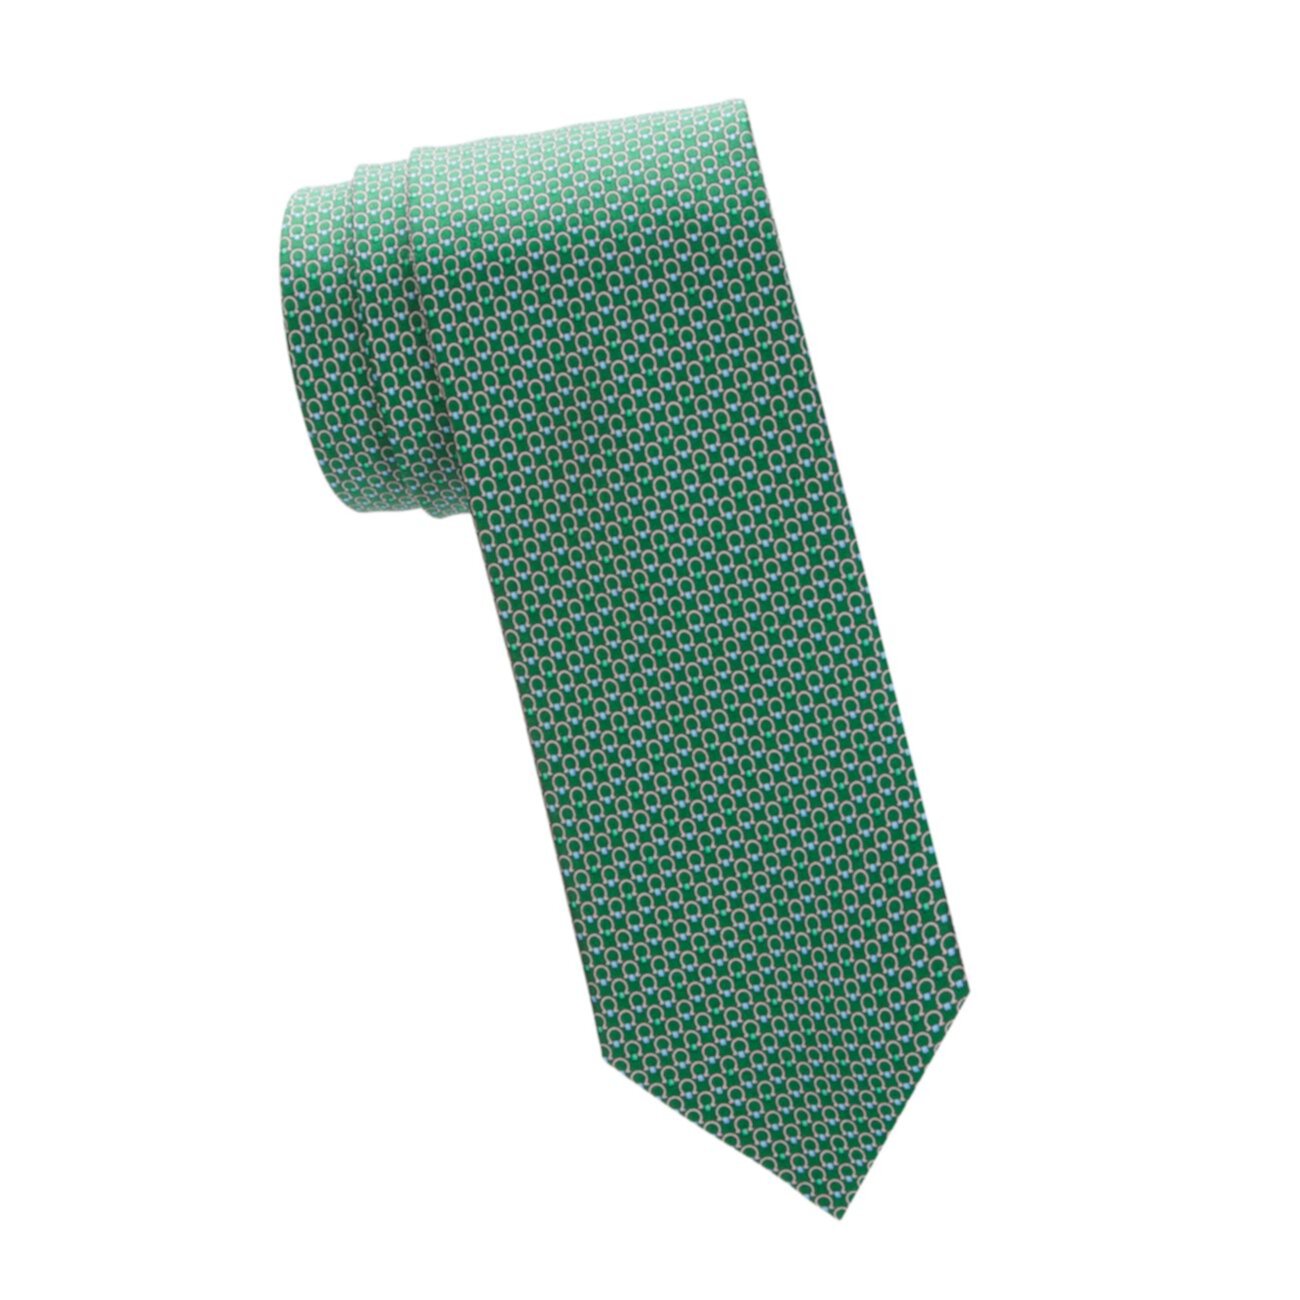 Узкий галстук с графическим принтом Salvatore Ferragamo